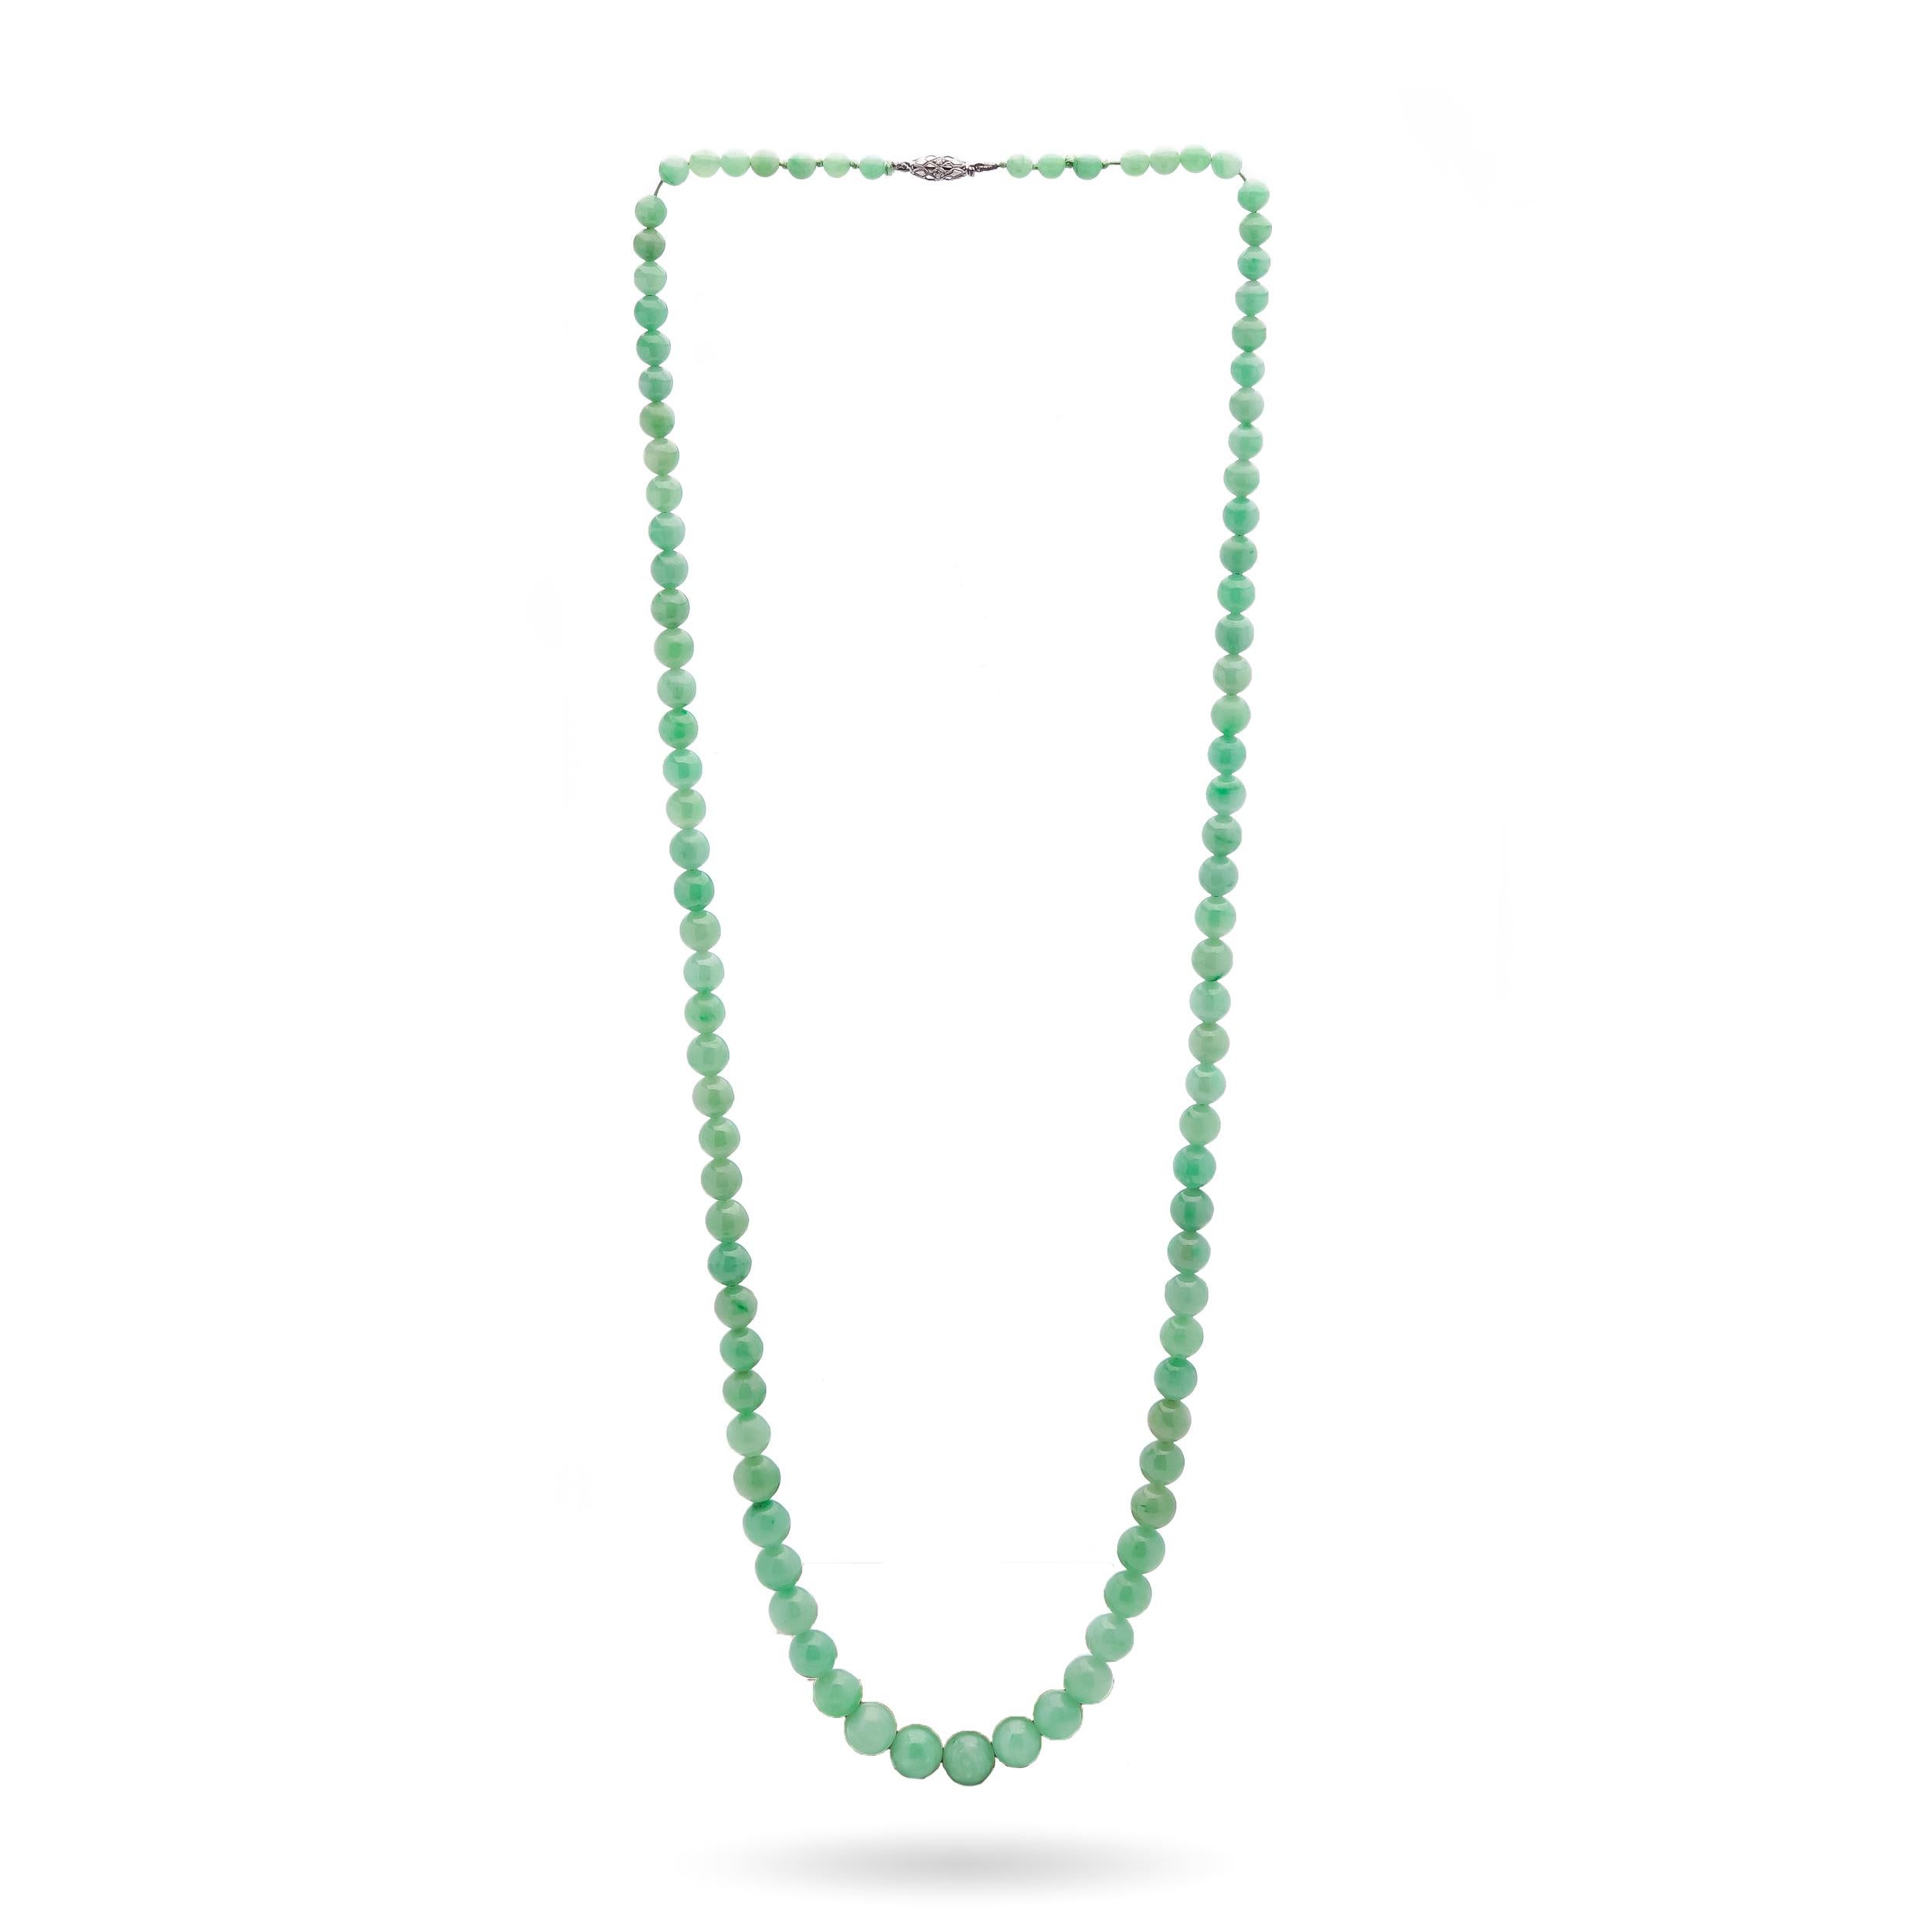 Collier ancien du début du 20e siècle en perles de jade naturel avec fermoir en platine.
Nombre total de perles de jade 95.
Fermoir en platine d'une pureté de 85% de platine (testé aux rayons X)
Collier réalisé dans les années 1920.

Dimensions -